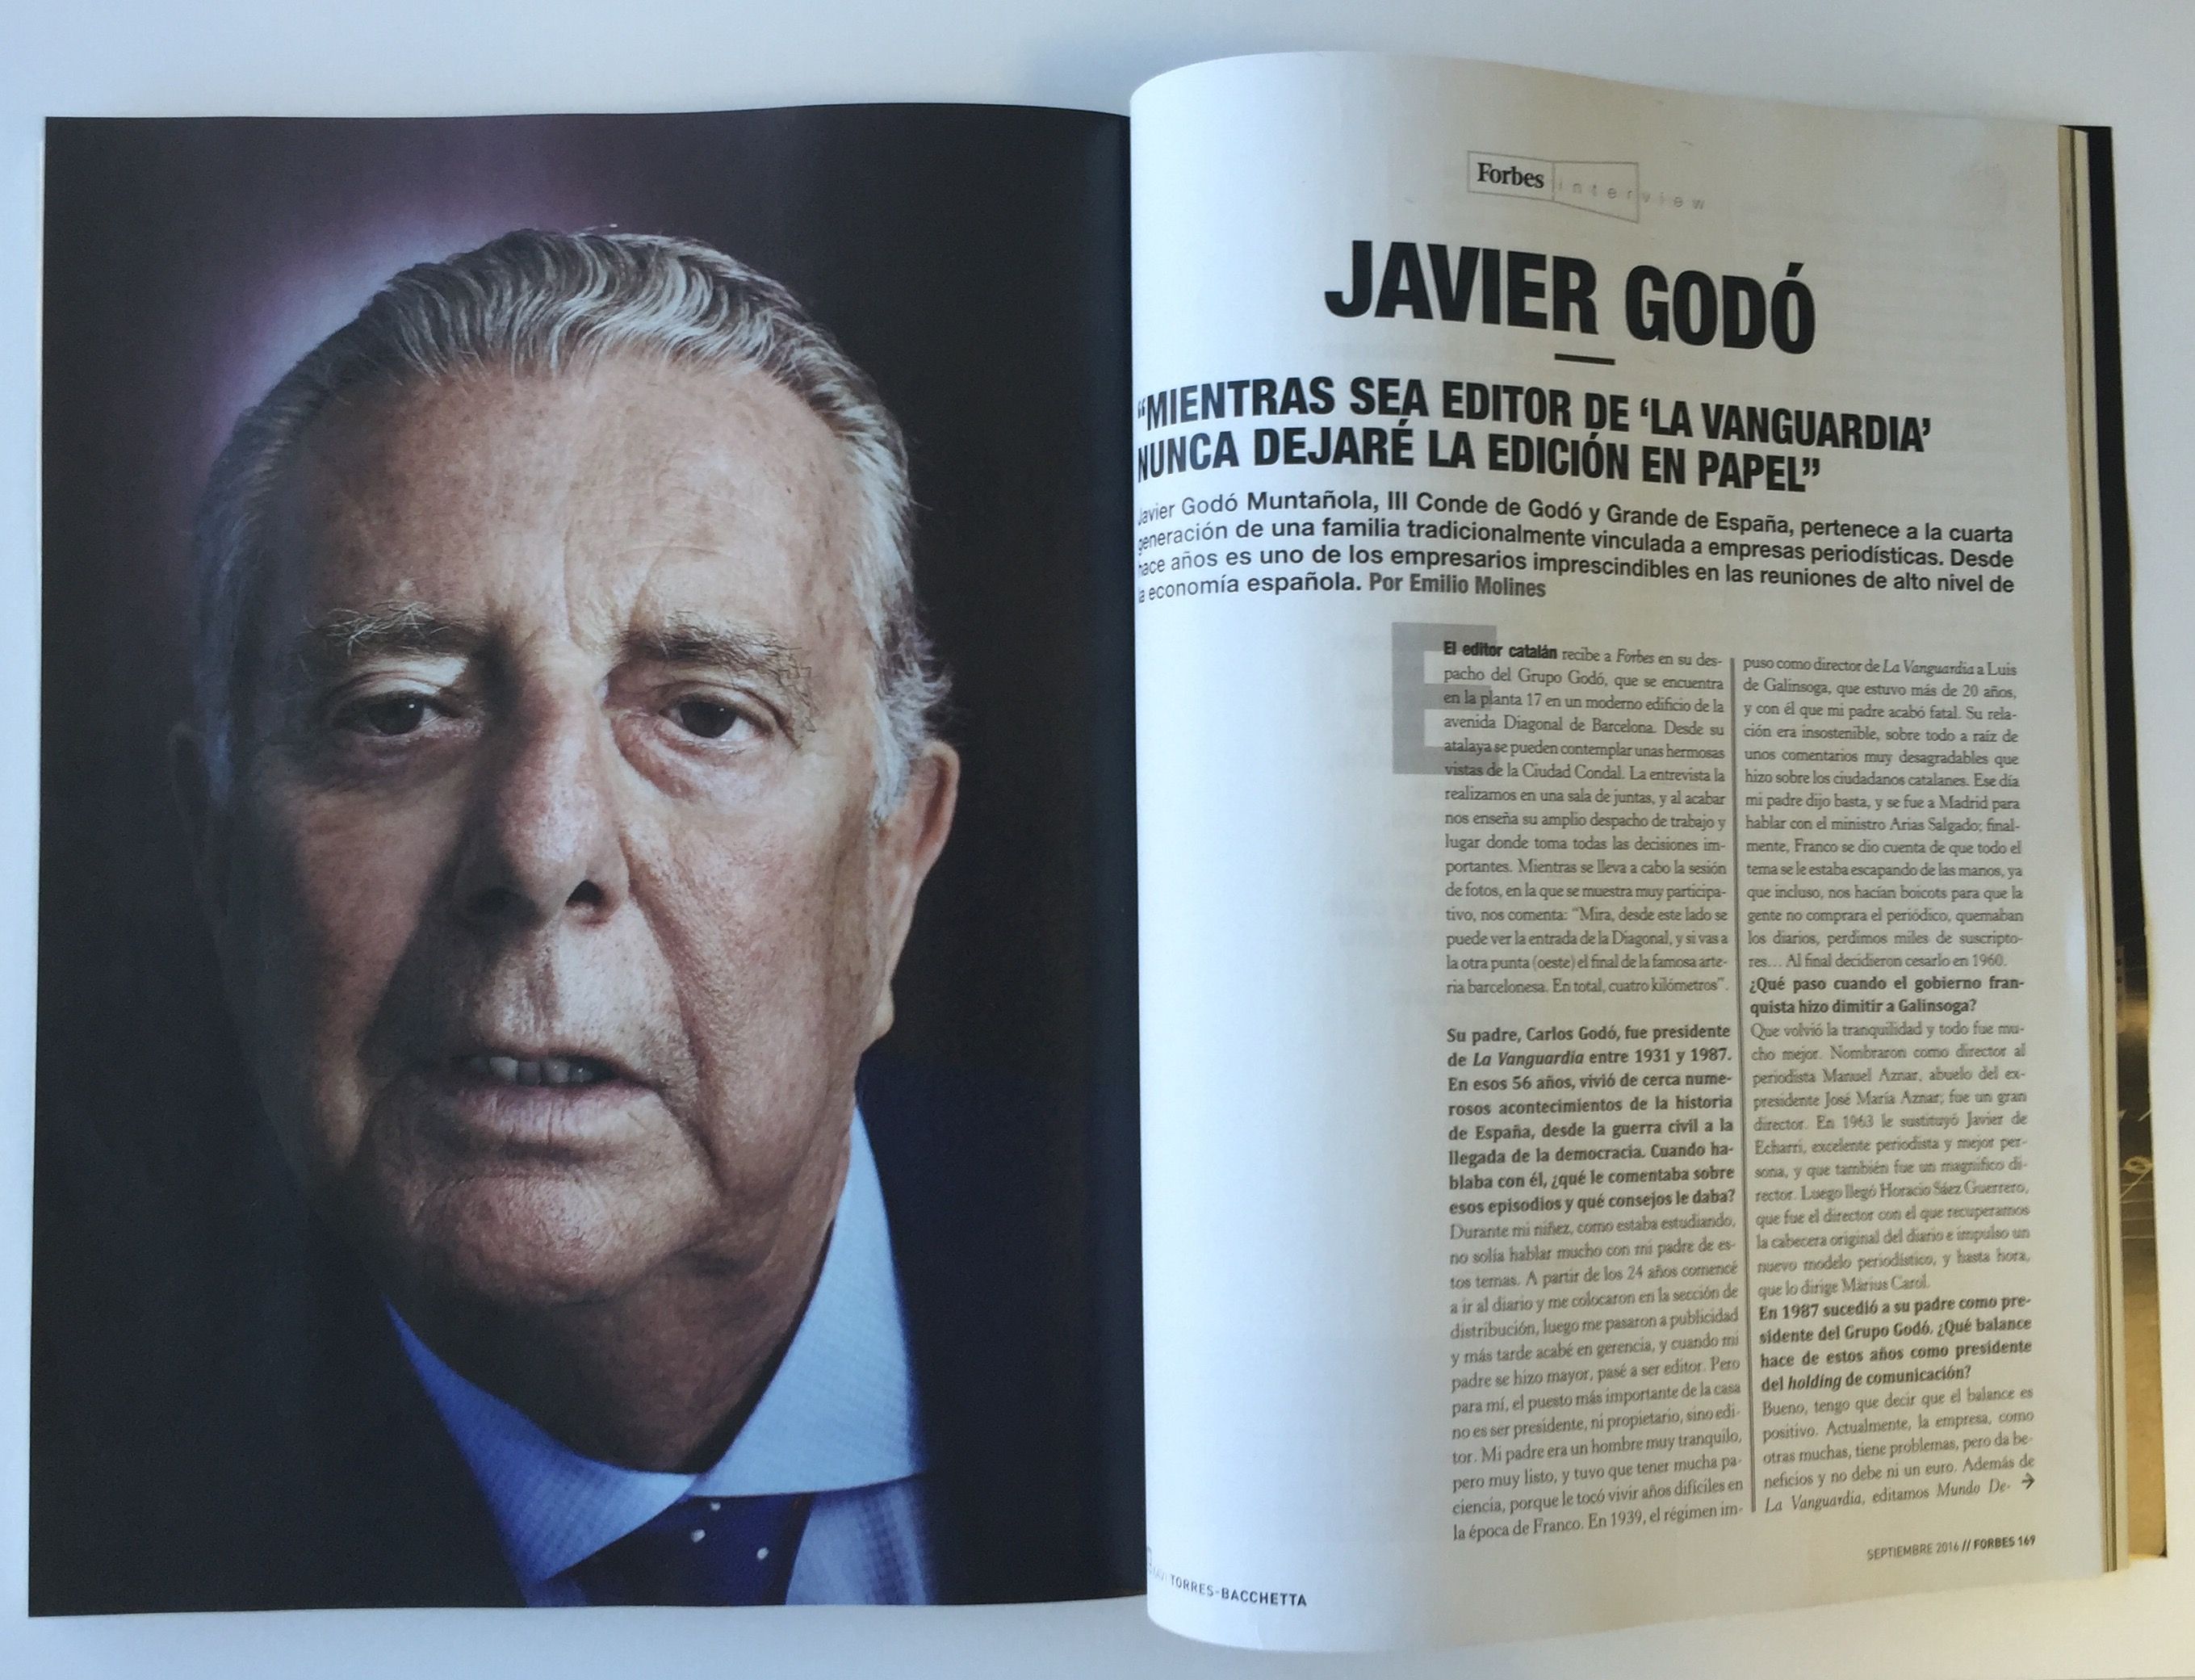 Javier Godó: "Tinc molts desafiaments abans de jubilar-me"